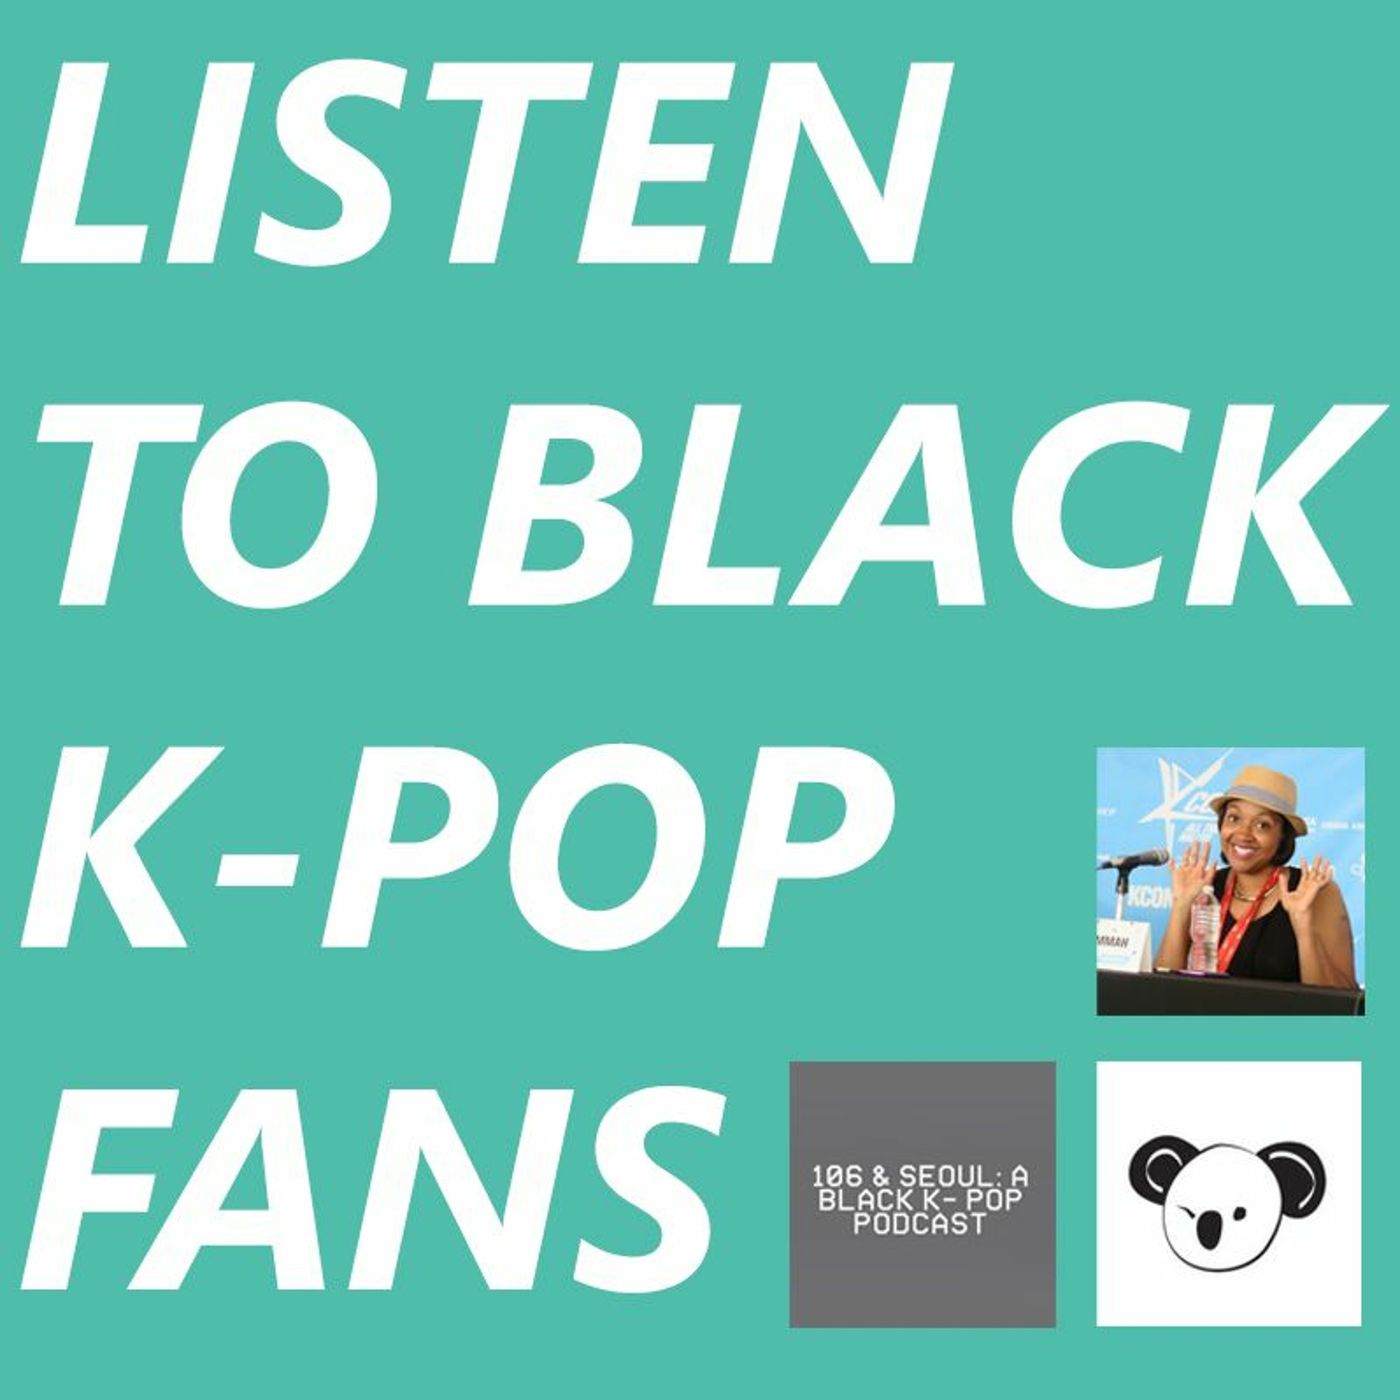 Listen To Black K-pop Fans